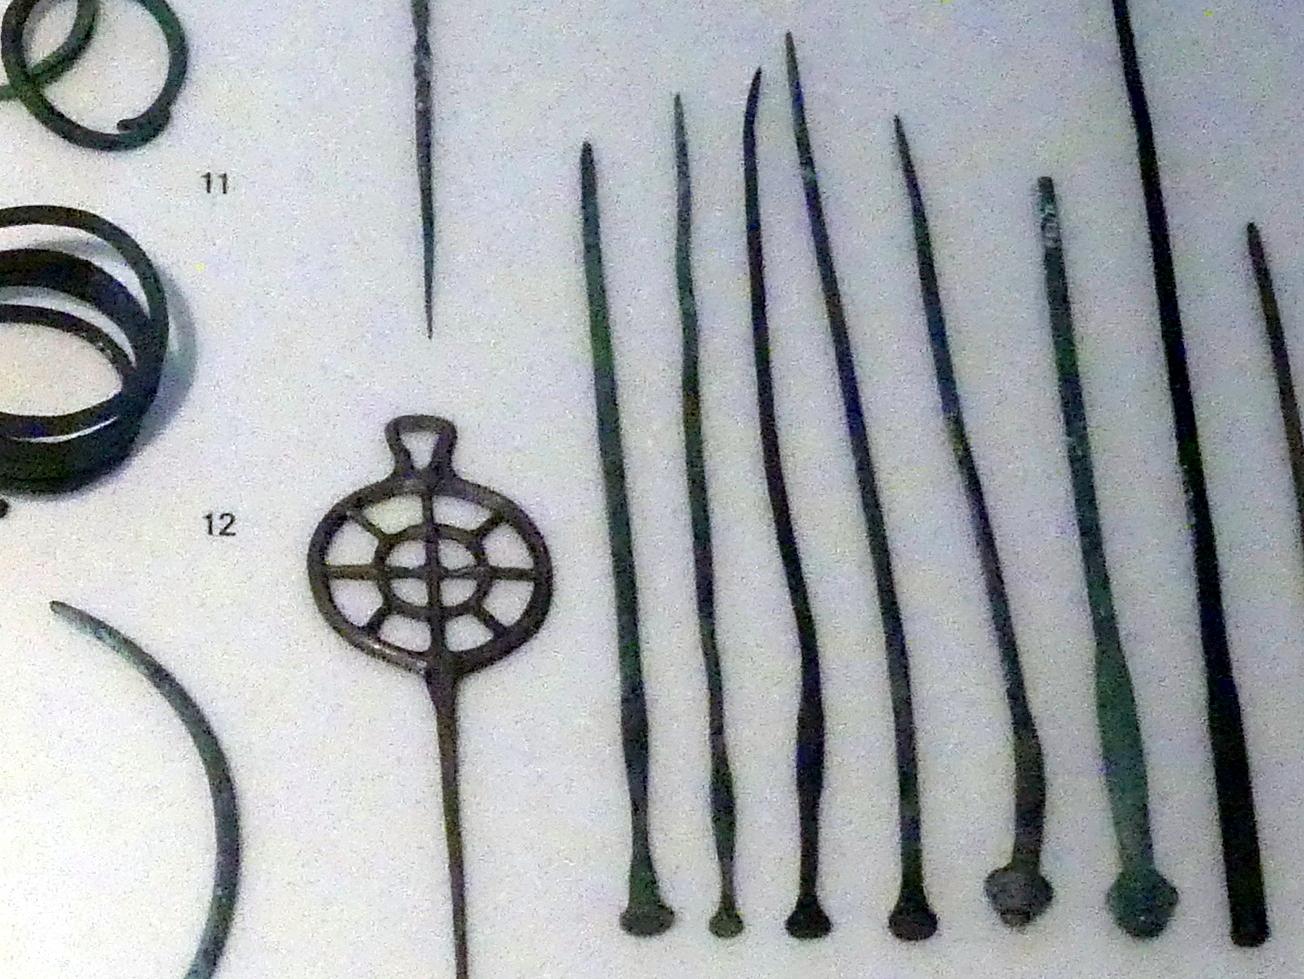 Nadeln, gerieft, mit verdicktem Hals, Bronzezeit, 3365 - 700 v. Chr., 1500 - 1400 v. Chr., Bild 1/2